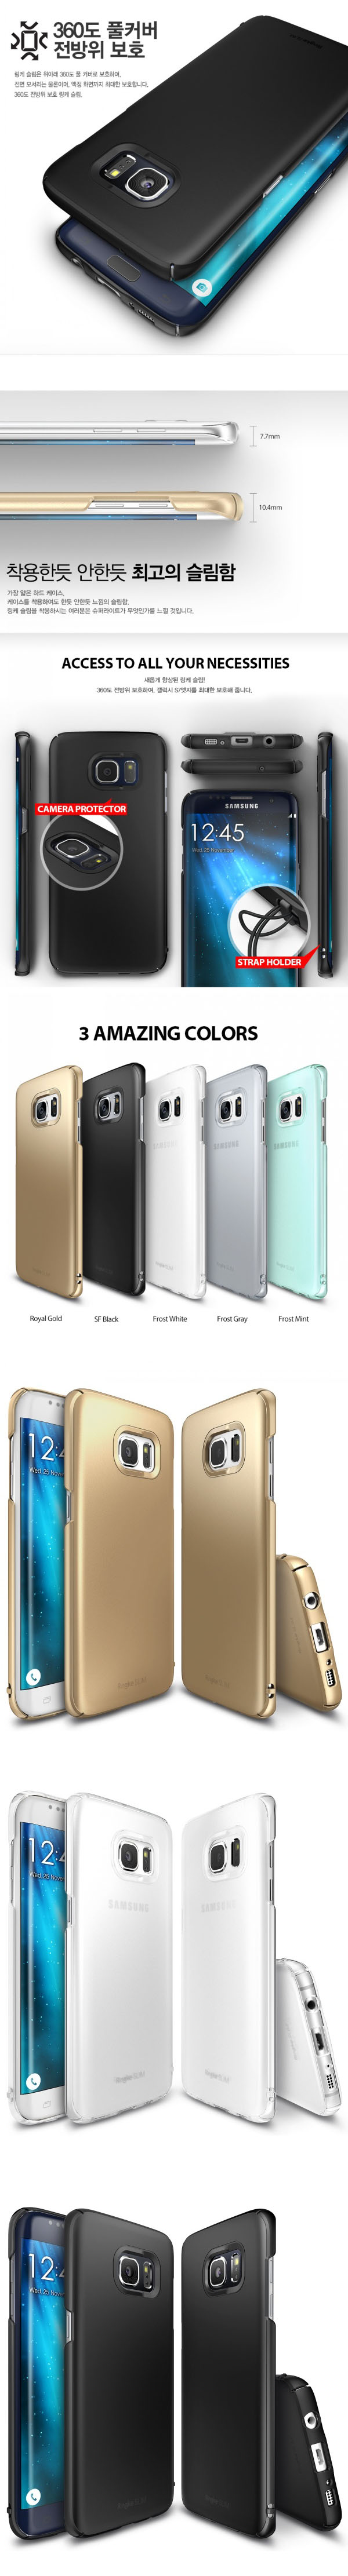 Ốp lưng Galaxy S7 Edge Ringke Slim 360 cao cấp từ Mỹ - 3